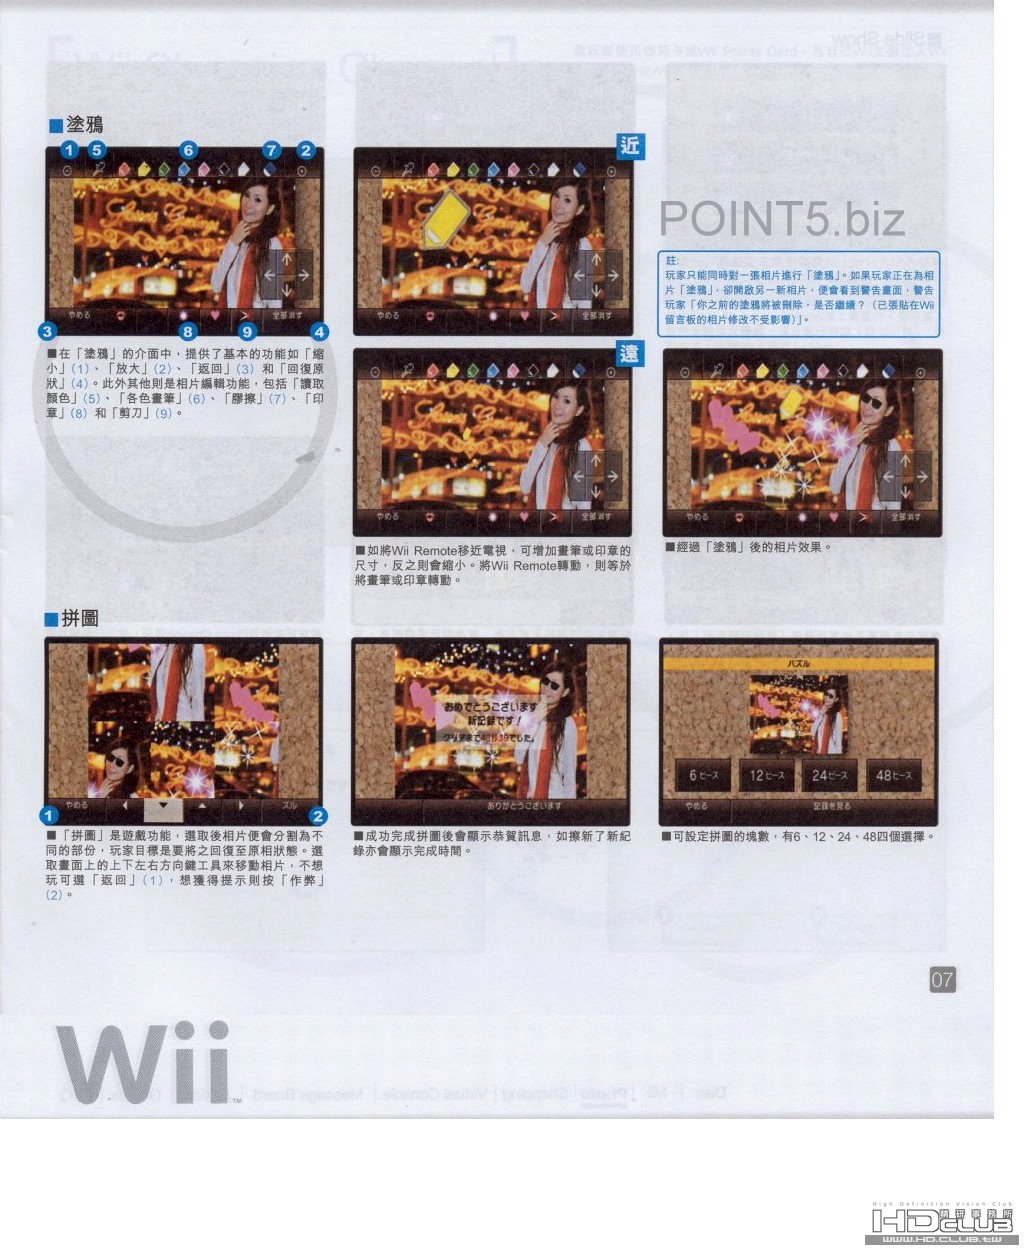 Wii-6.jpg